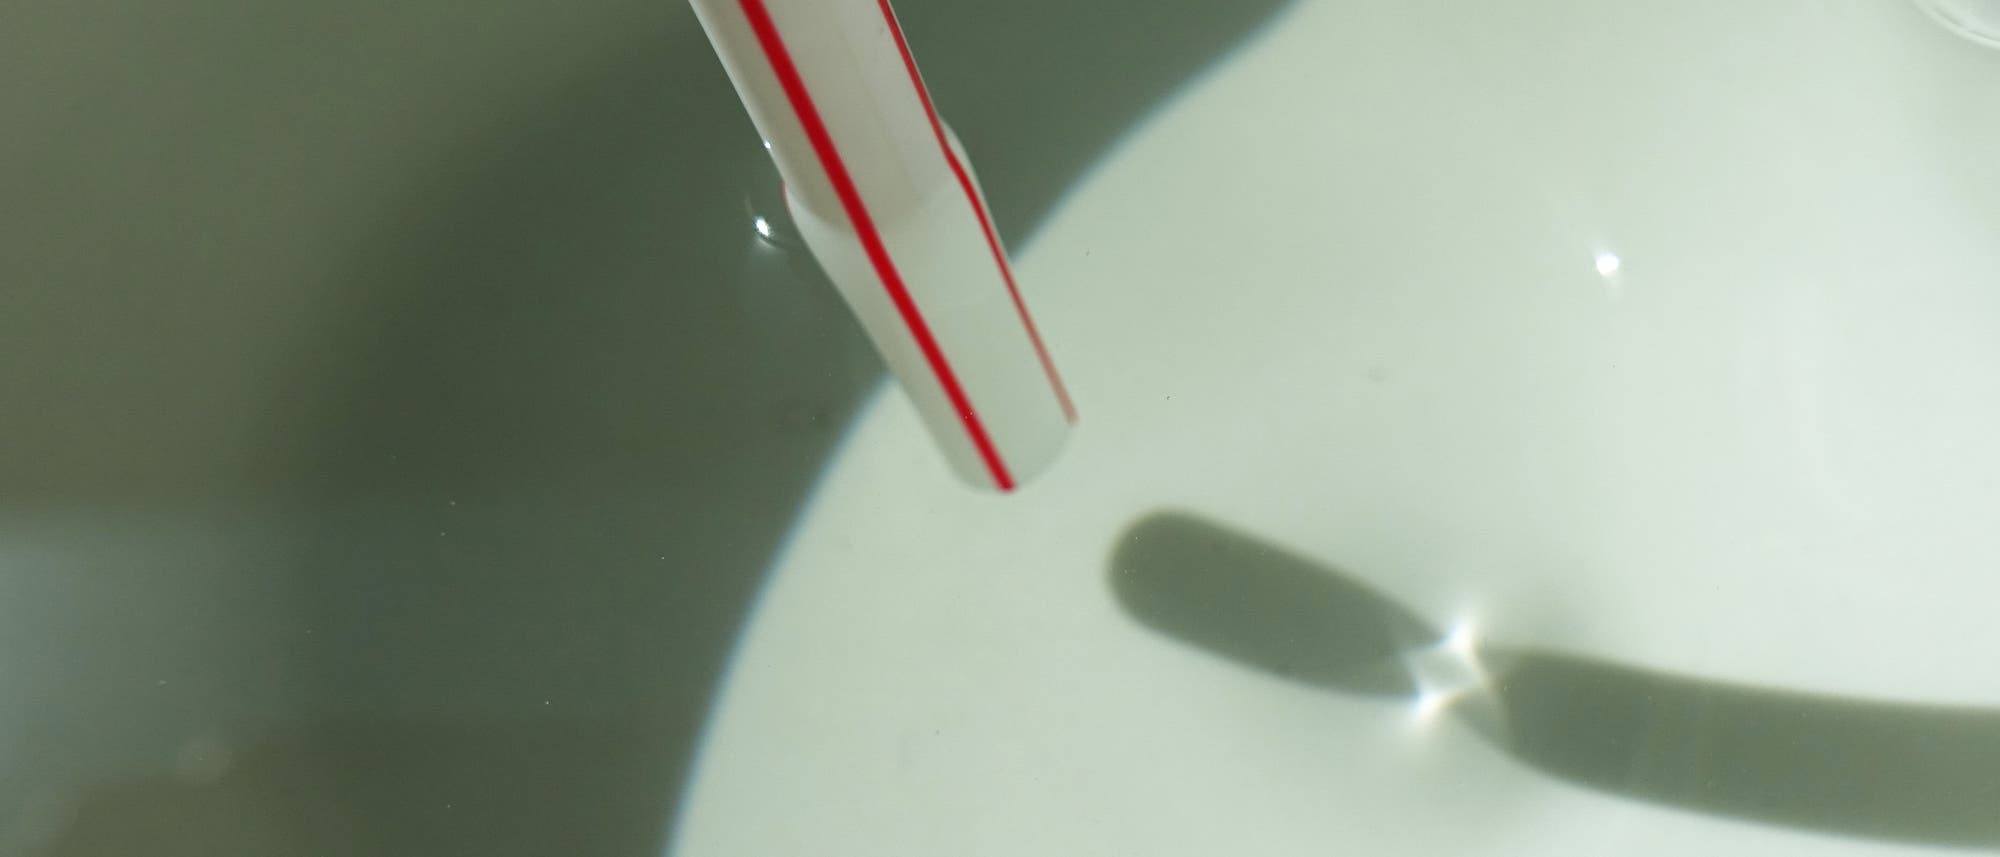 Der Schatten eines Strohhalms auf dem Boden eines Behälters zerfällt in zwei Teile. Sie sind durch eine charakteristische Kaustik getrennt.